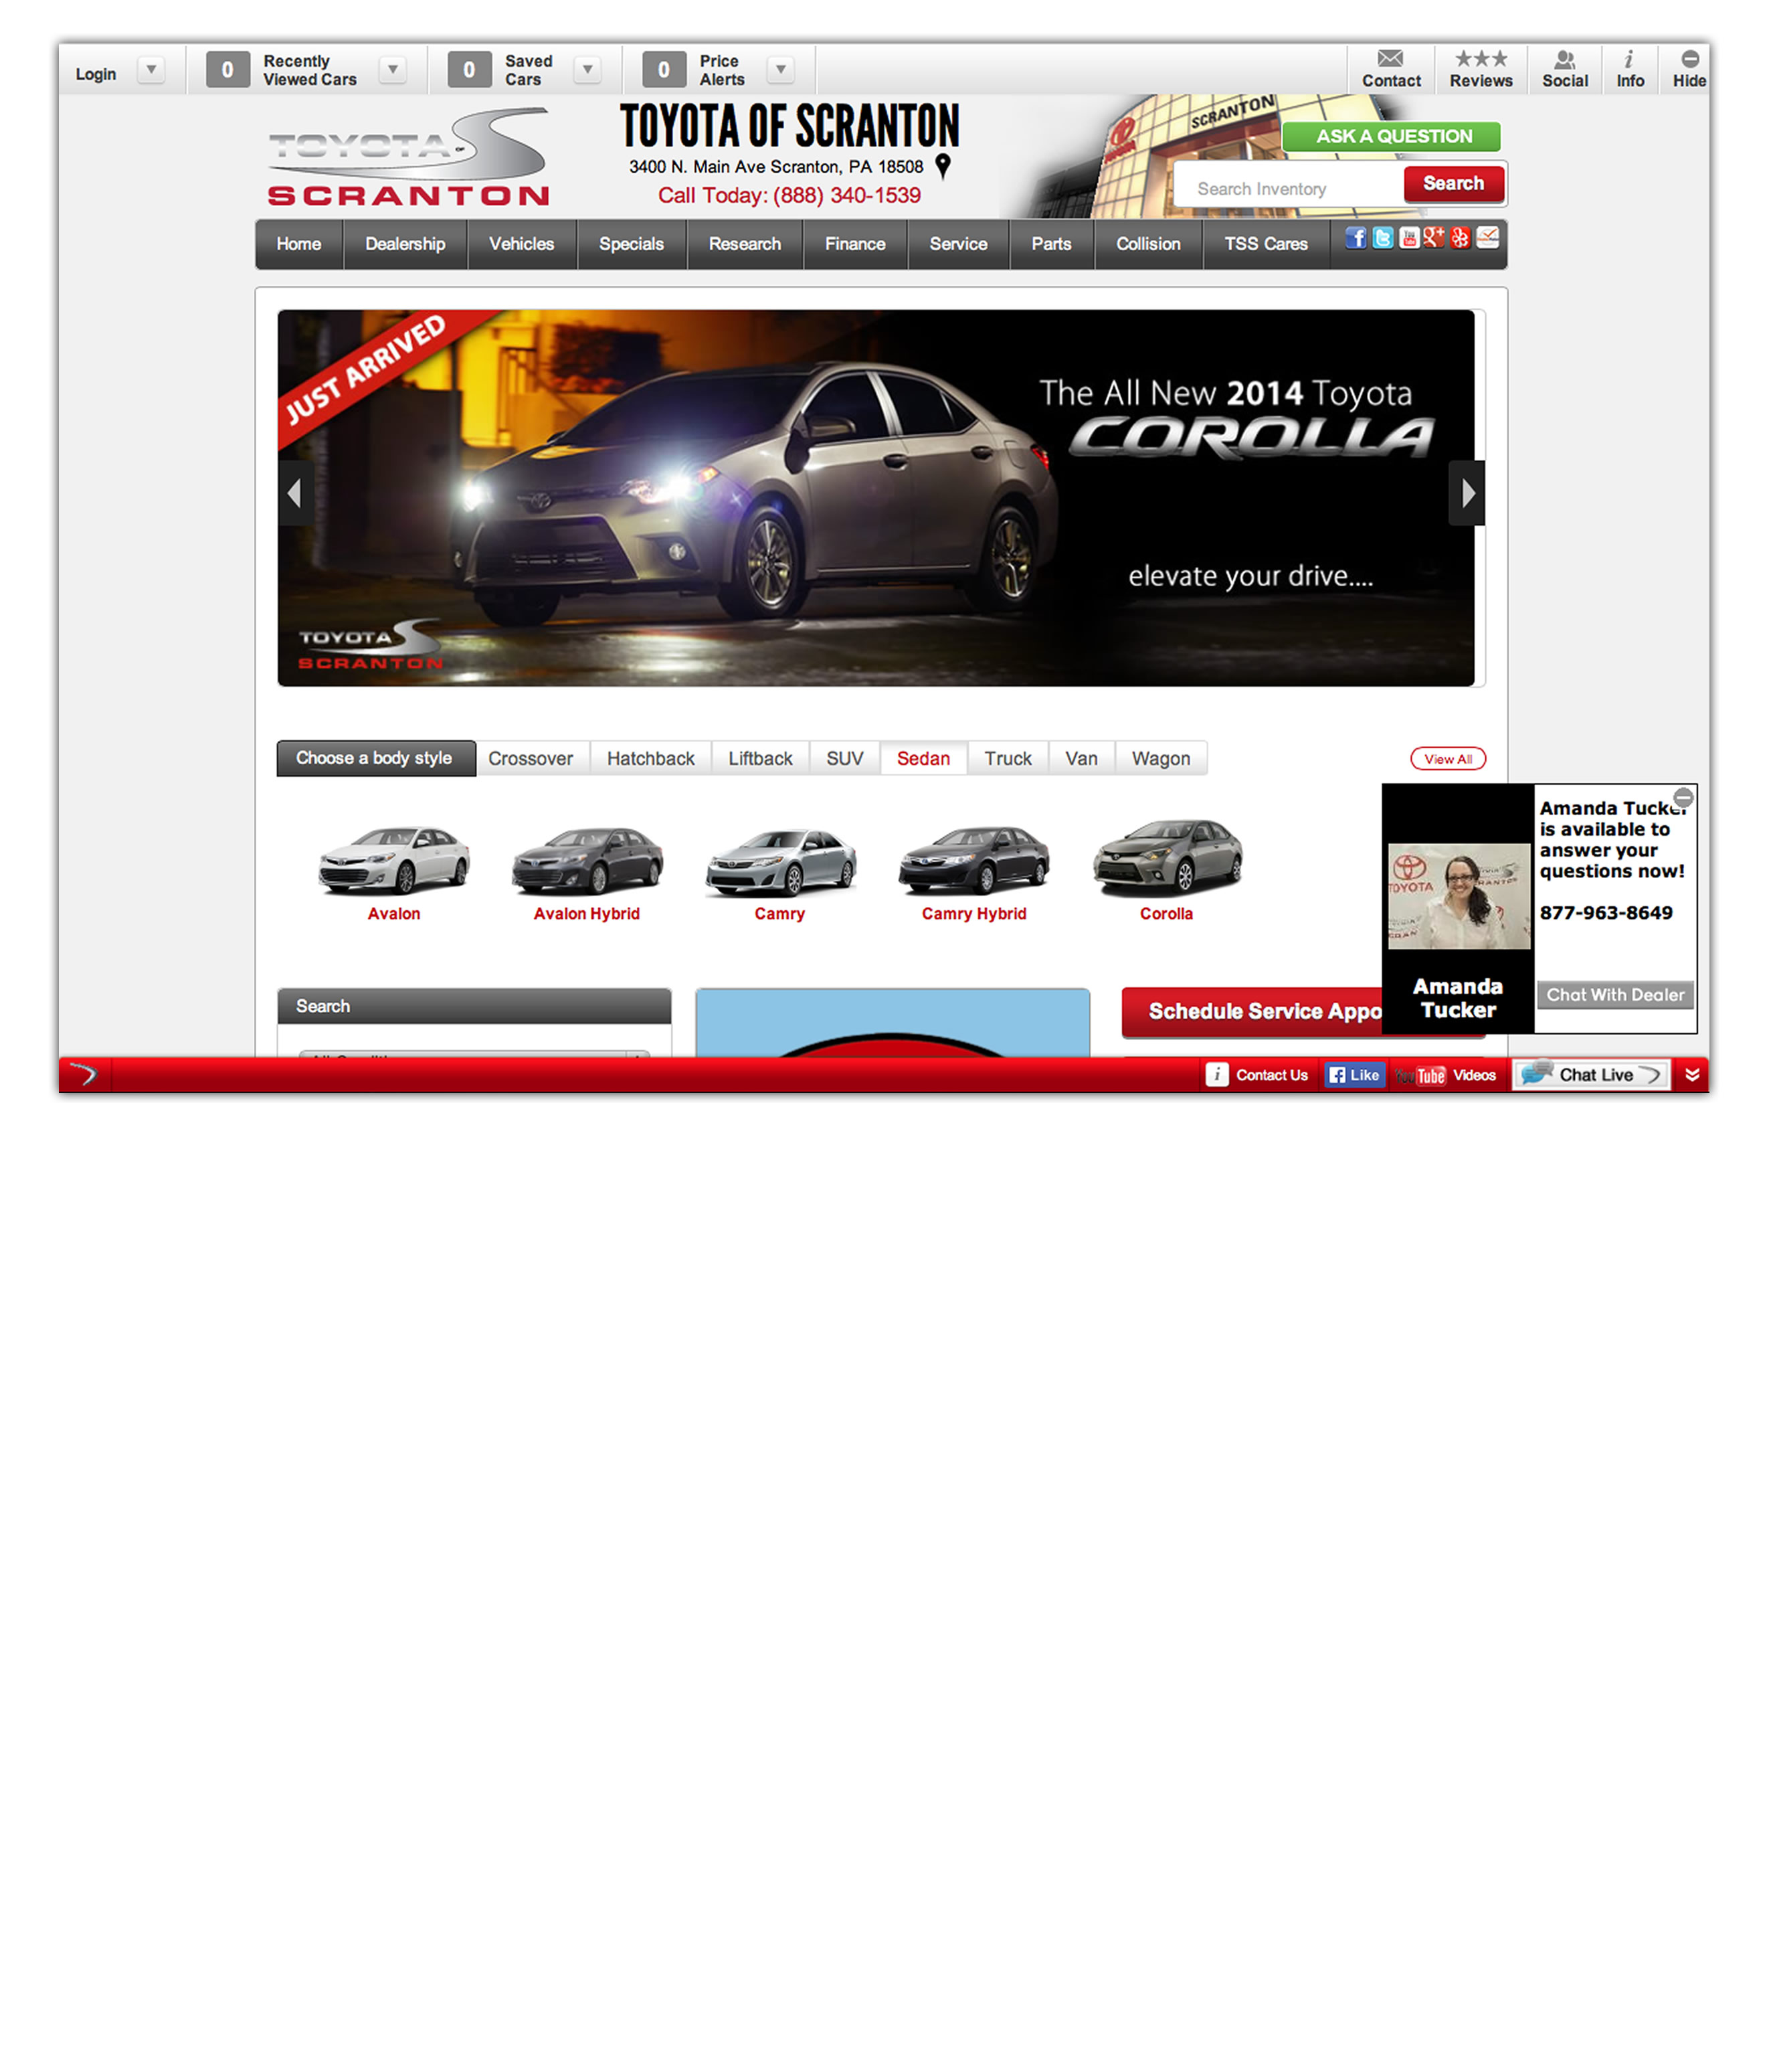 Toyota dealer.com editing website